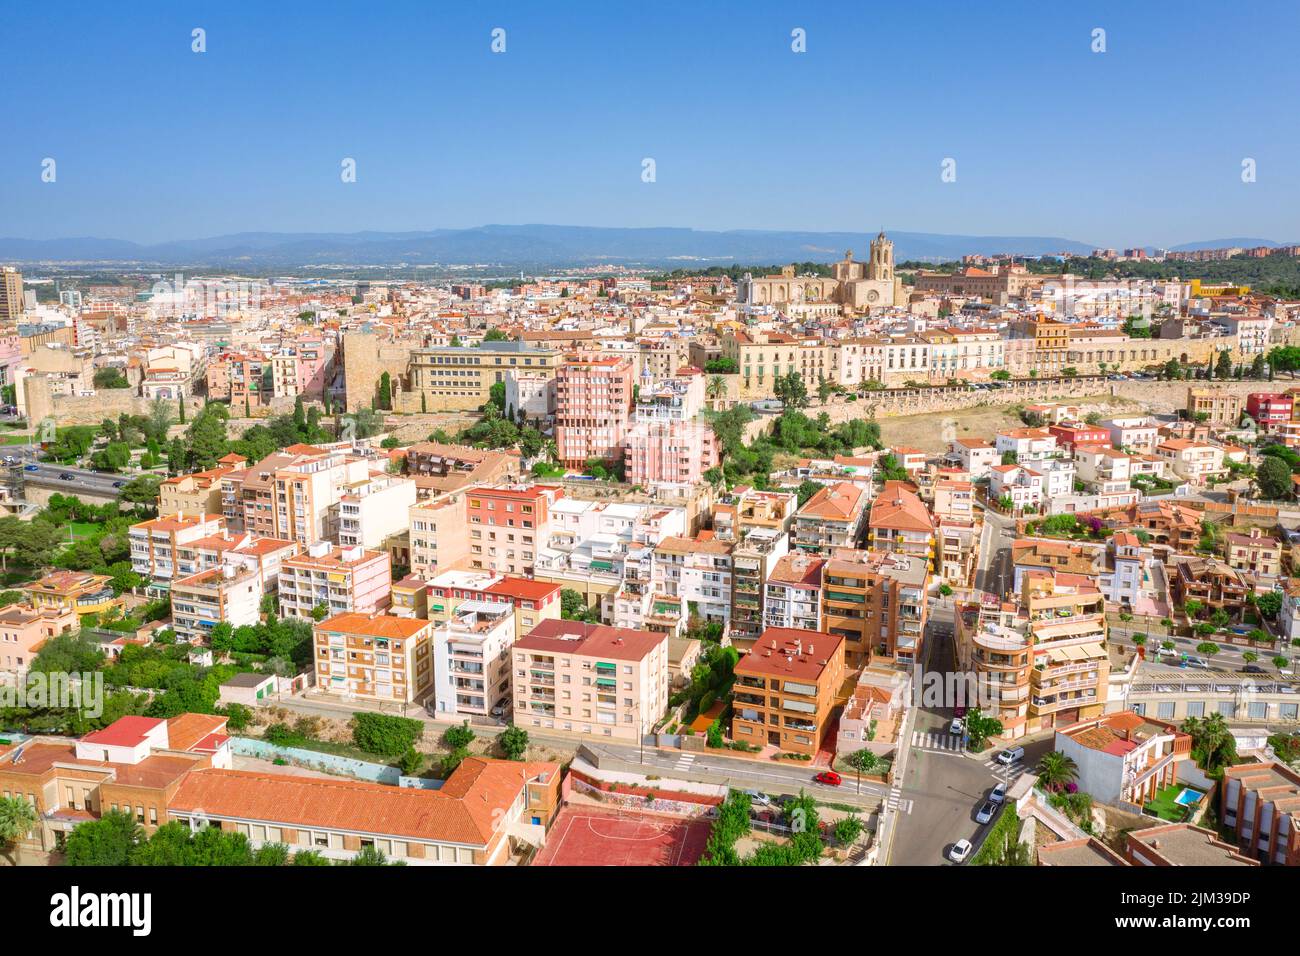 View of Catalan city Tarragona, Spain Stock Photo